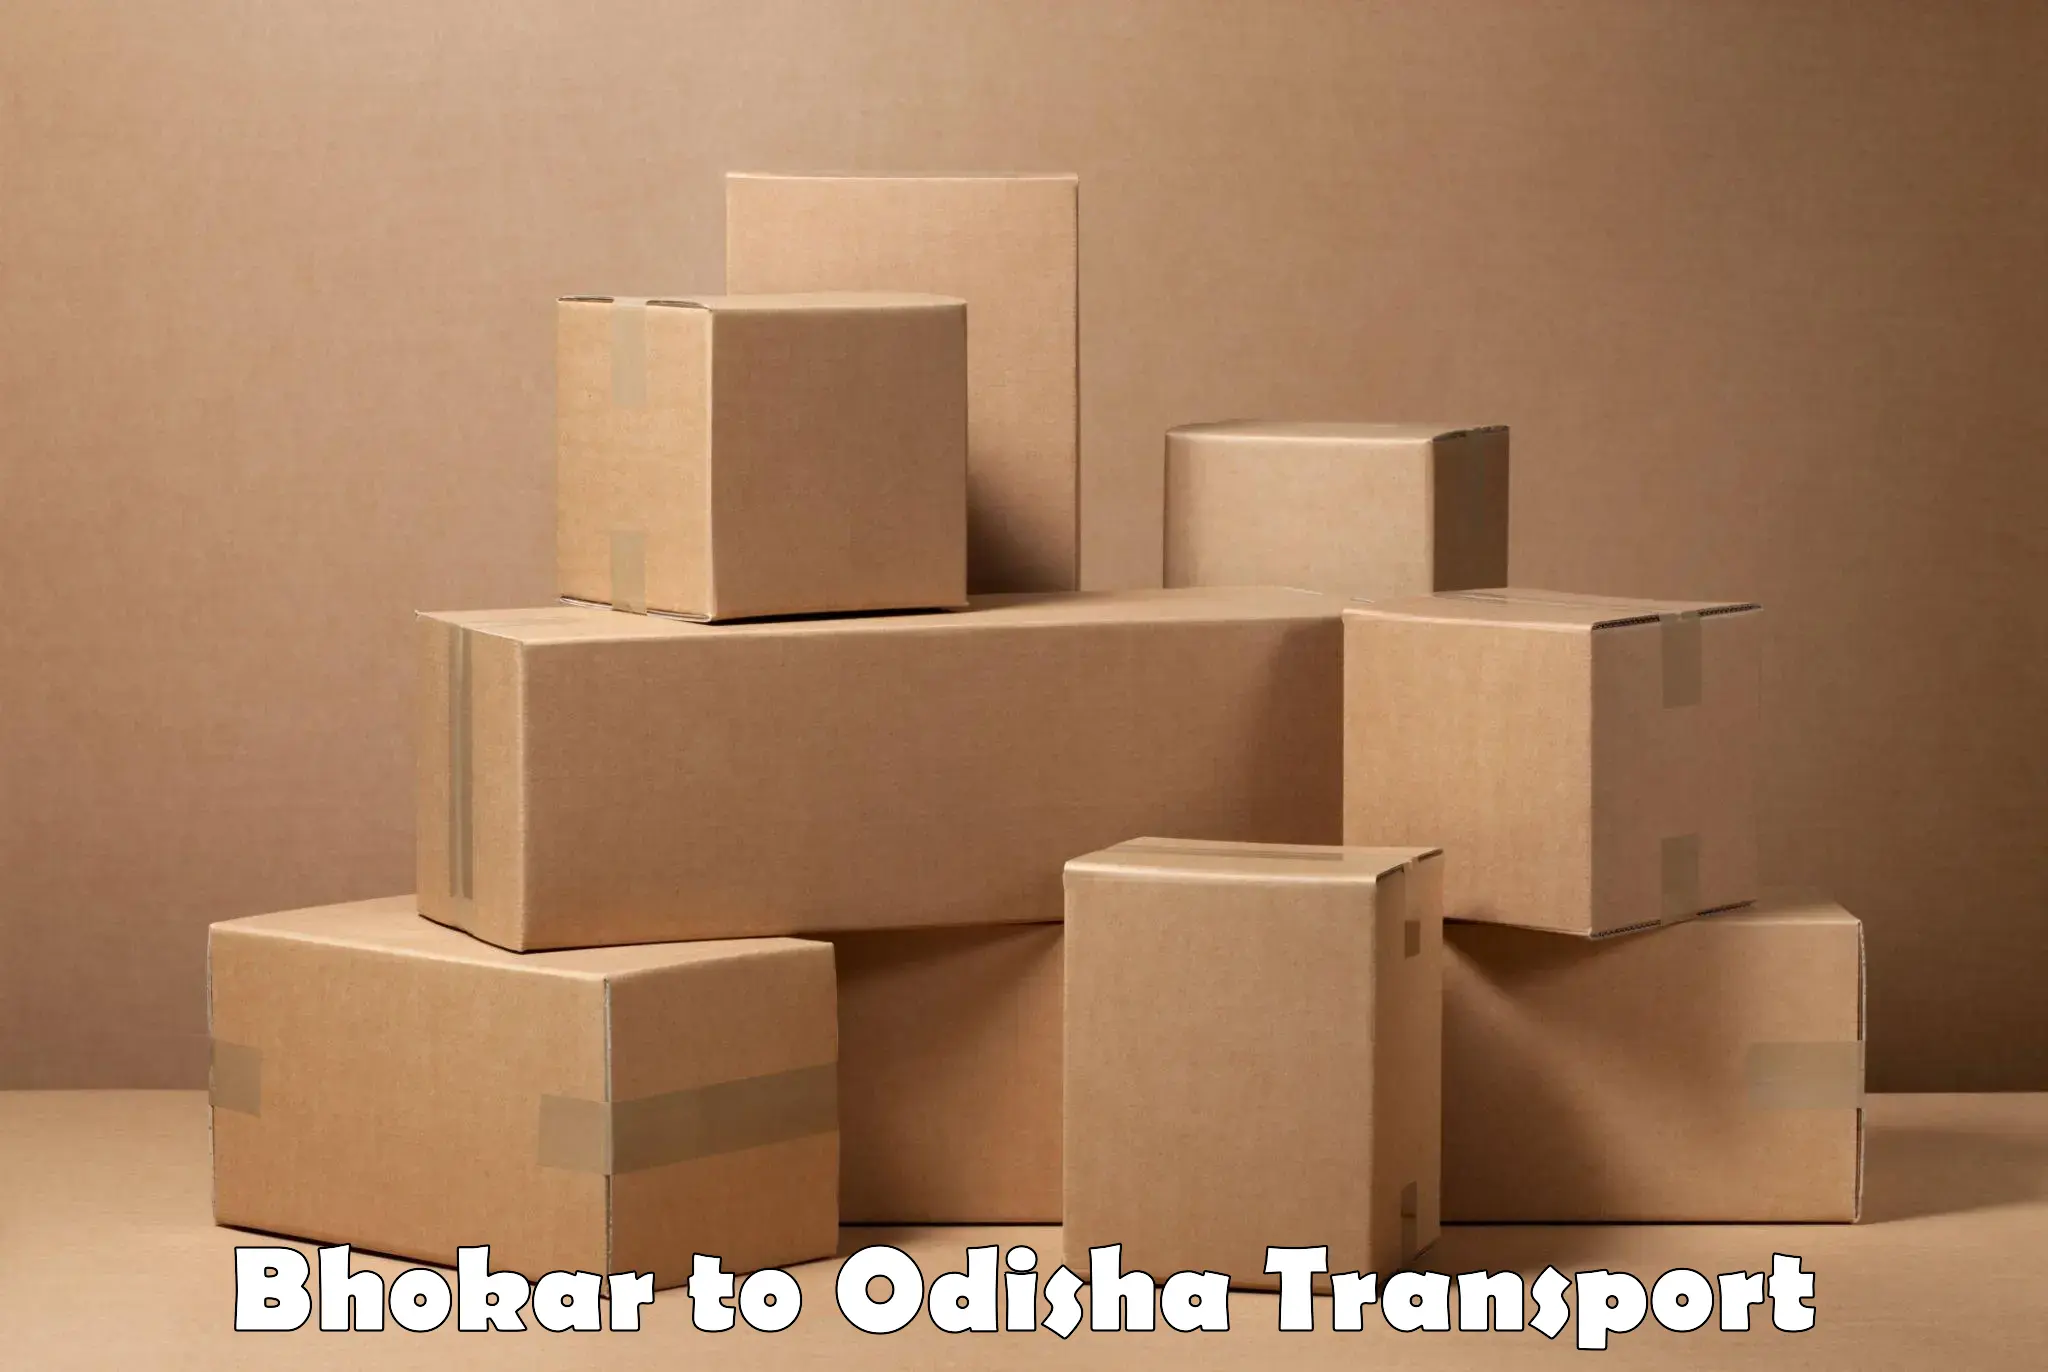 Container transport service Bhokar to Kuchinda